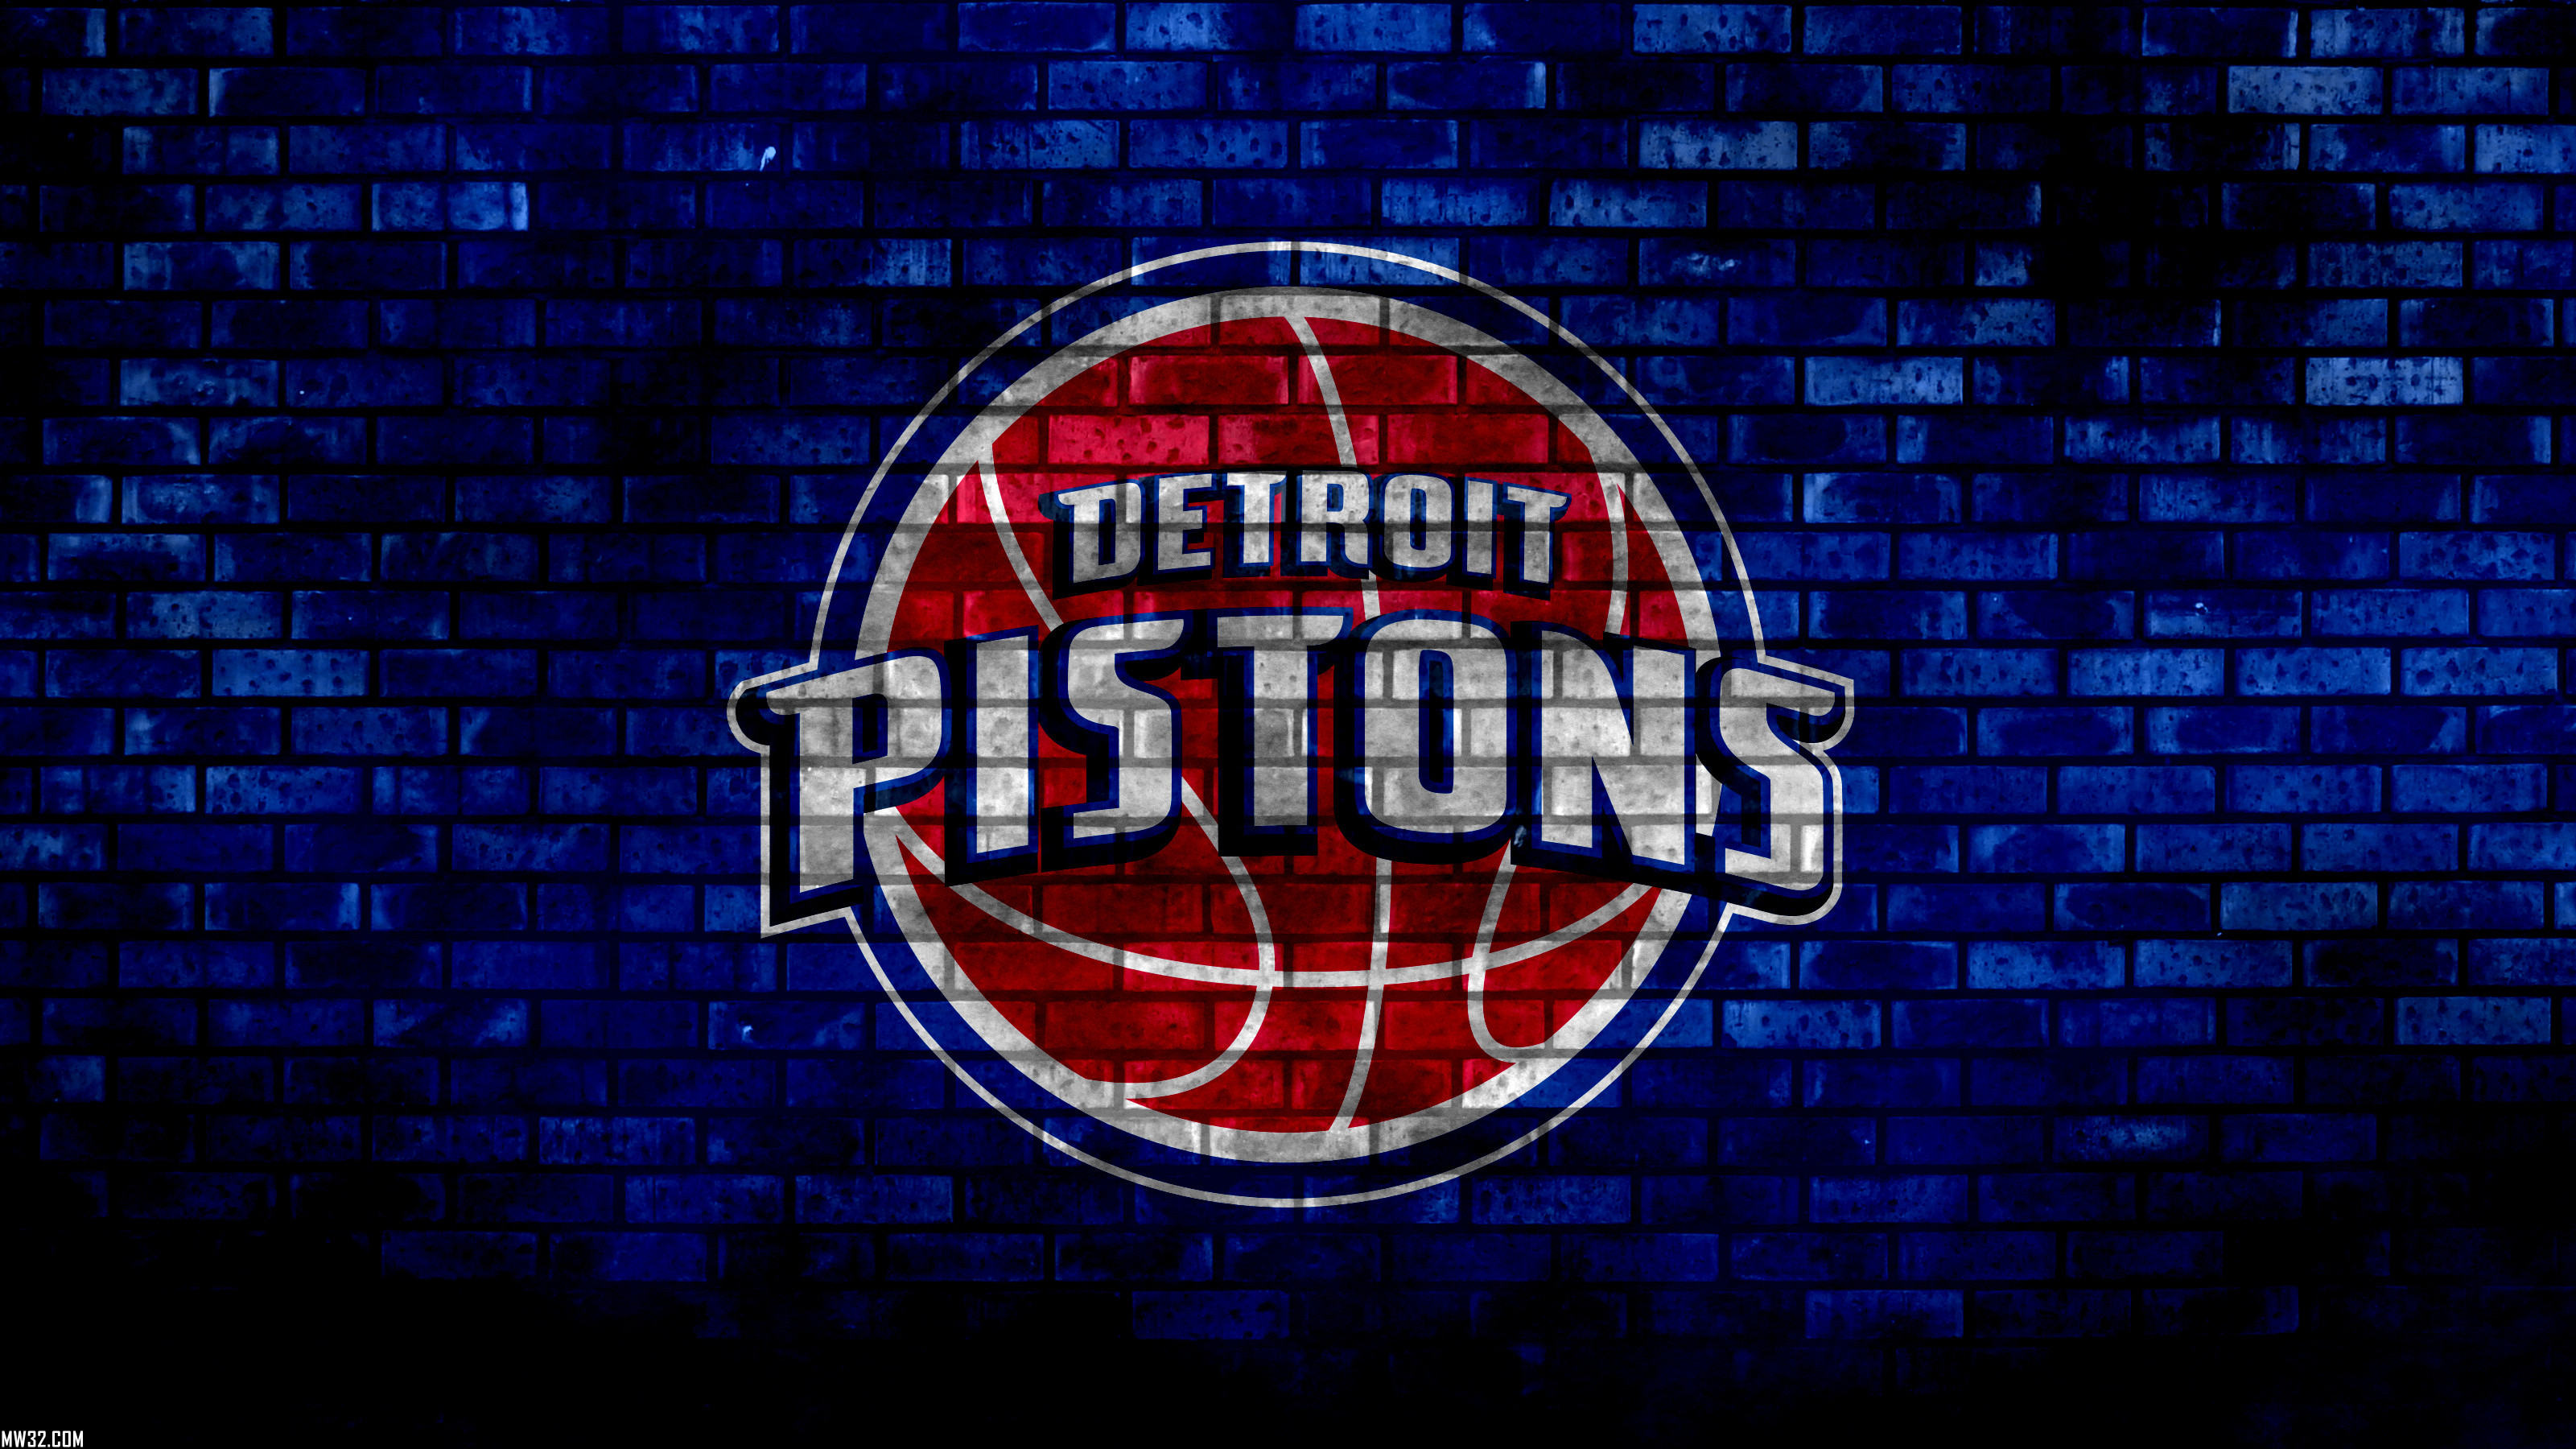 Detroit Pistons rumors